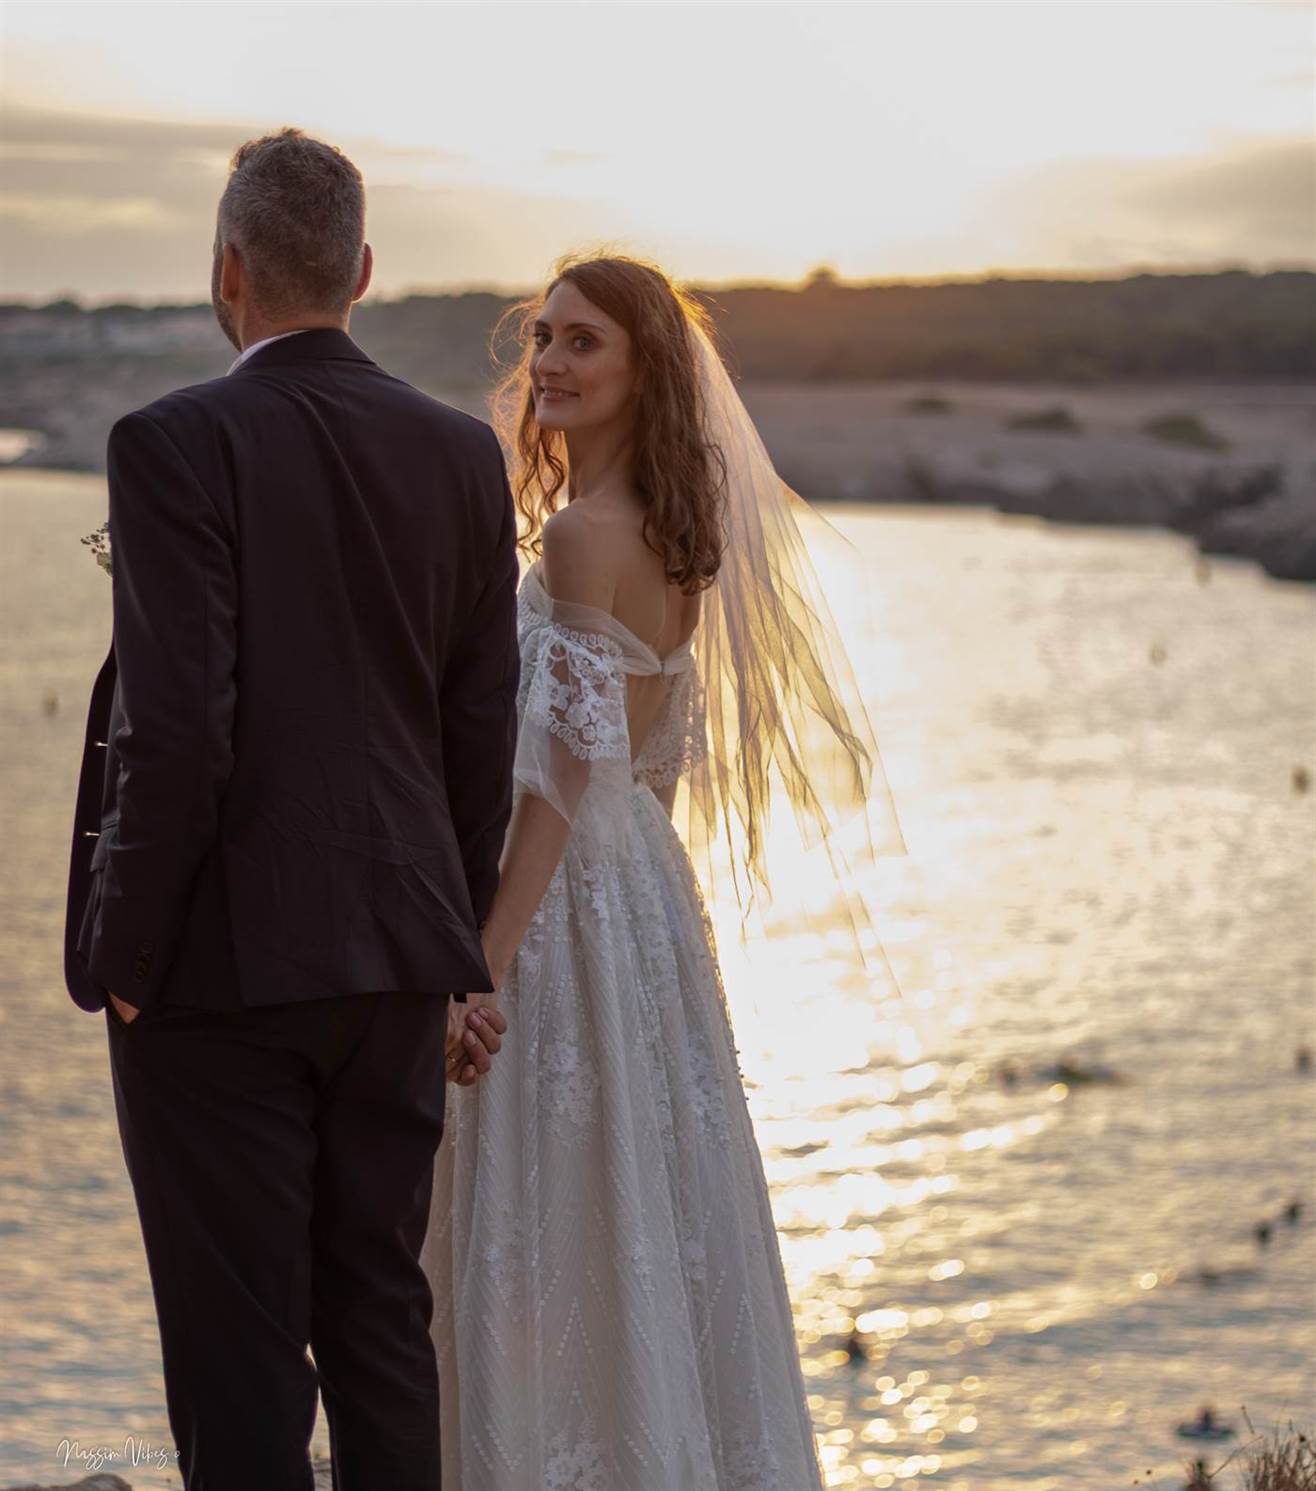 Immortalisez votre amour à Aix-en-Provence avec Nassim, le photographe de mariage passionné 144